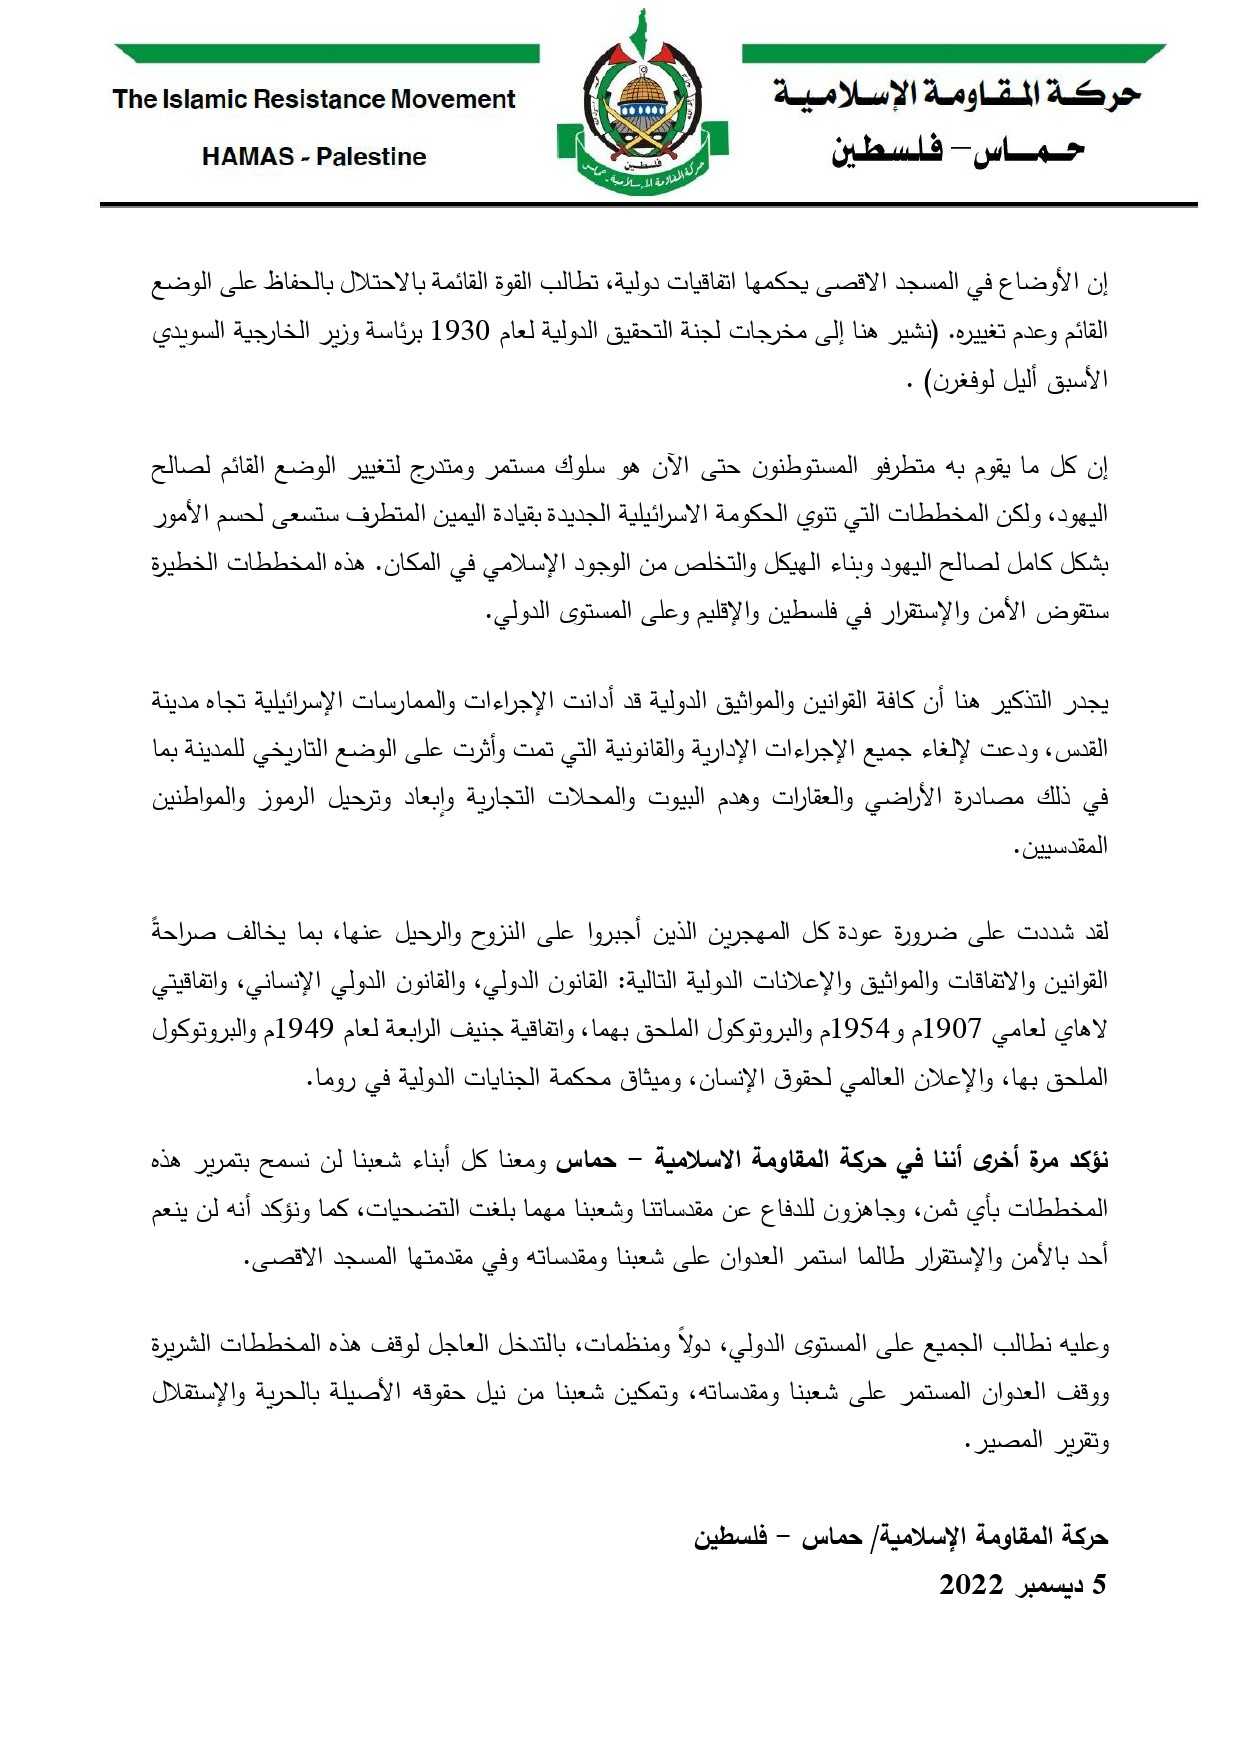 مذكرة سياسة من حماس_page-0002.jpg